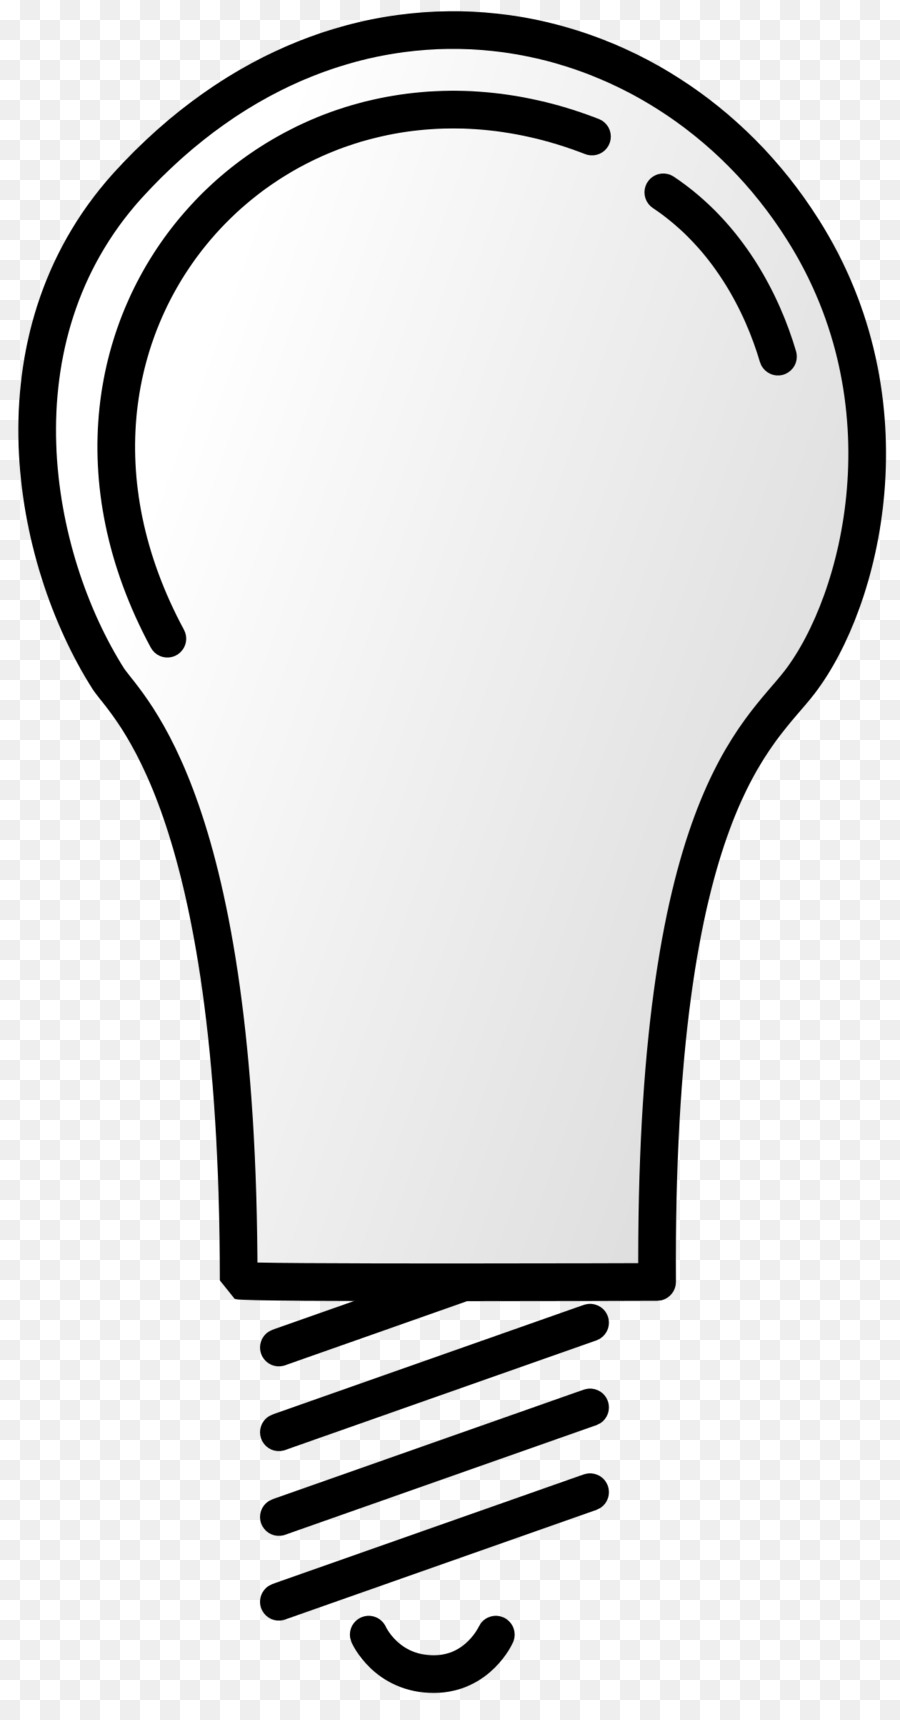 Incandescent light bulb Lamp Clip art - lightbulb png download - 1260*2400 - Free Transparent  Light png Download.